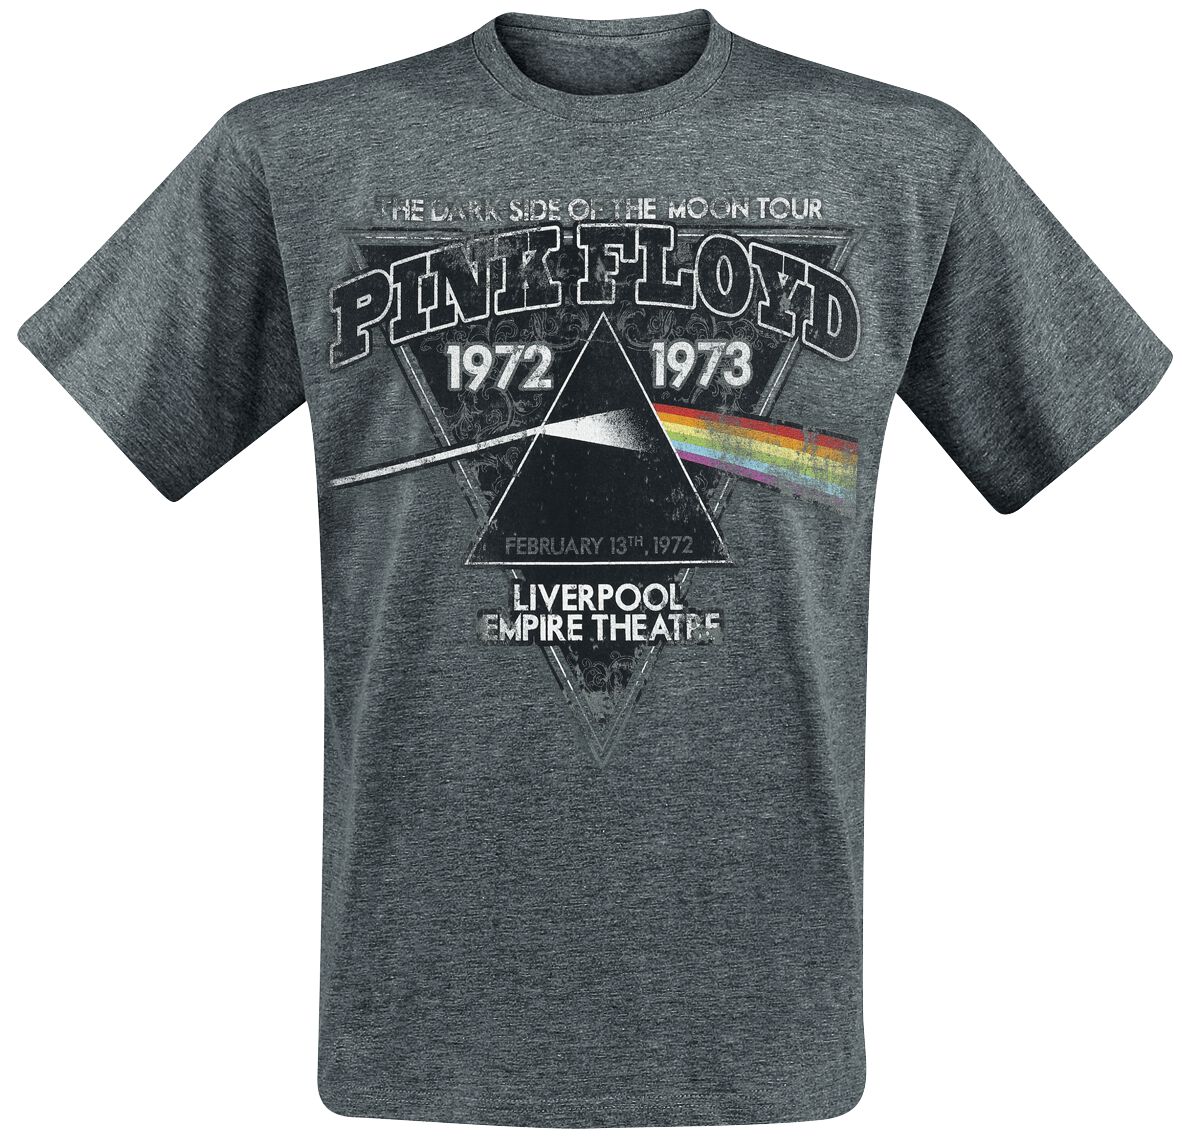 The Dark Side Of The Moon Liverpool 1972 T-Shirt grau meliert von Pink Floyd